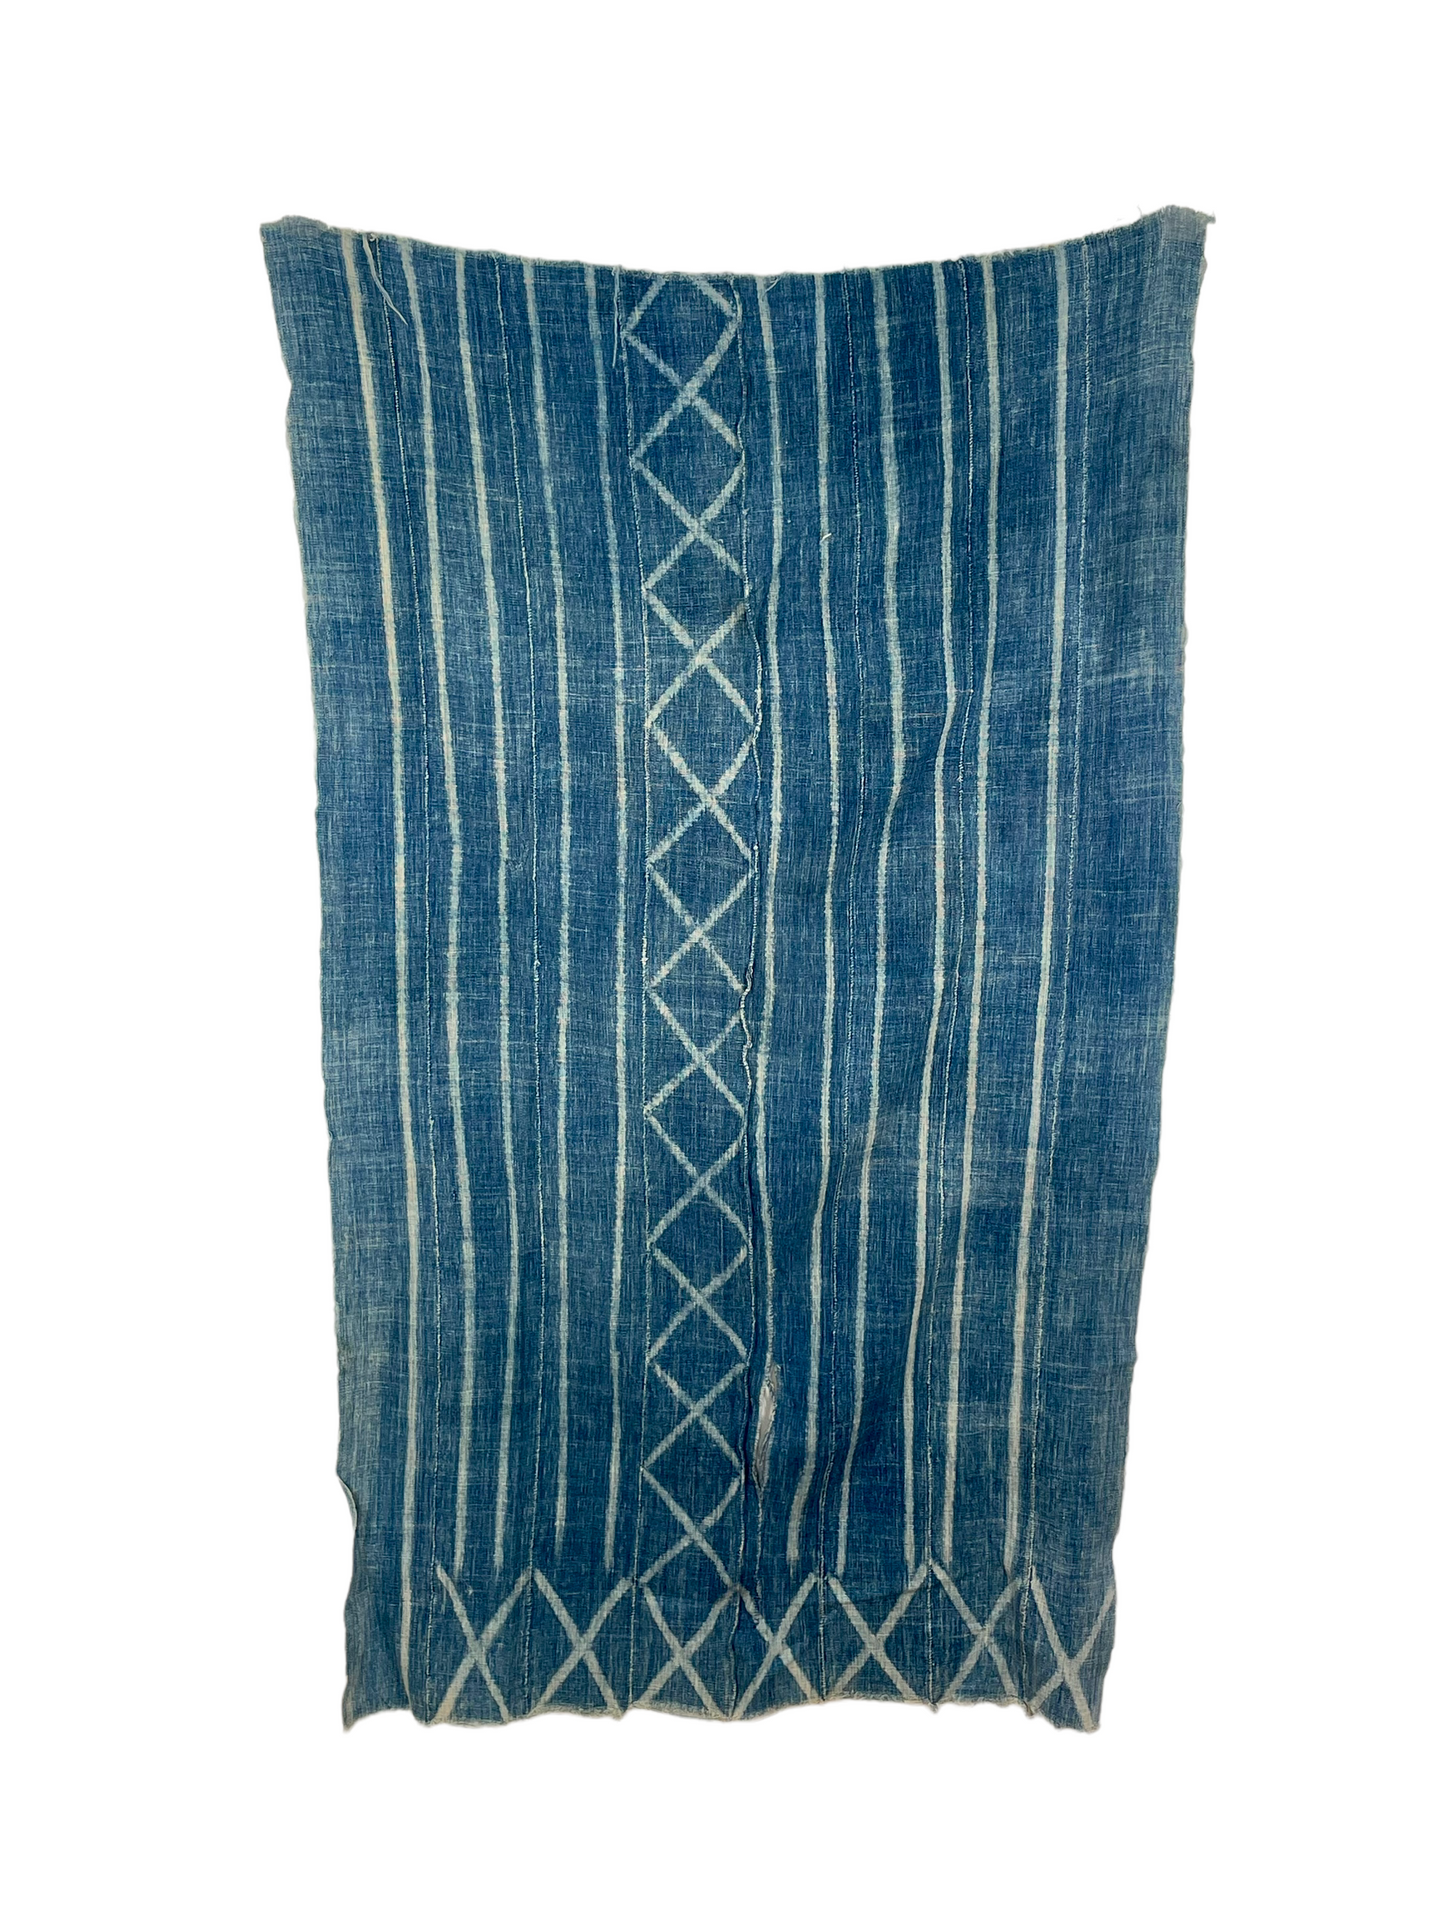 Indigo African Textile